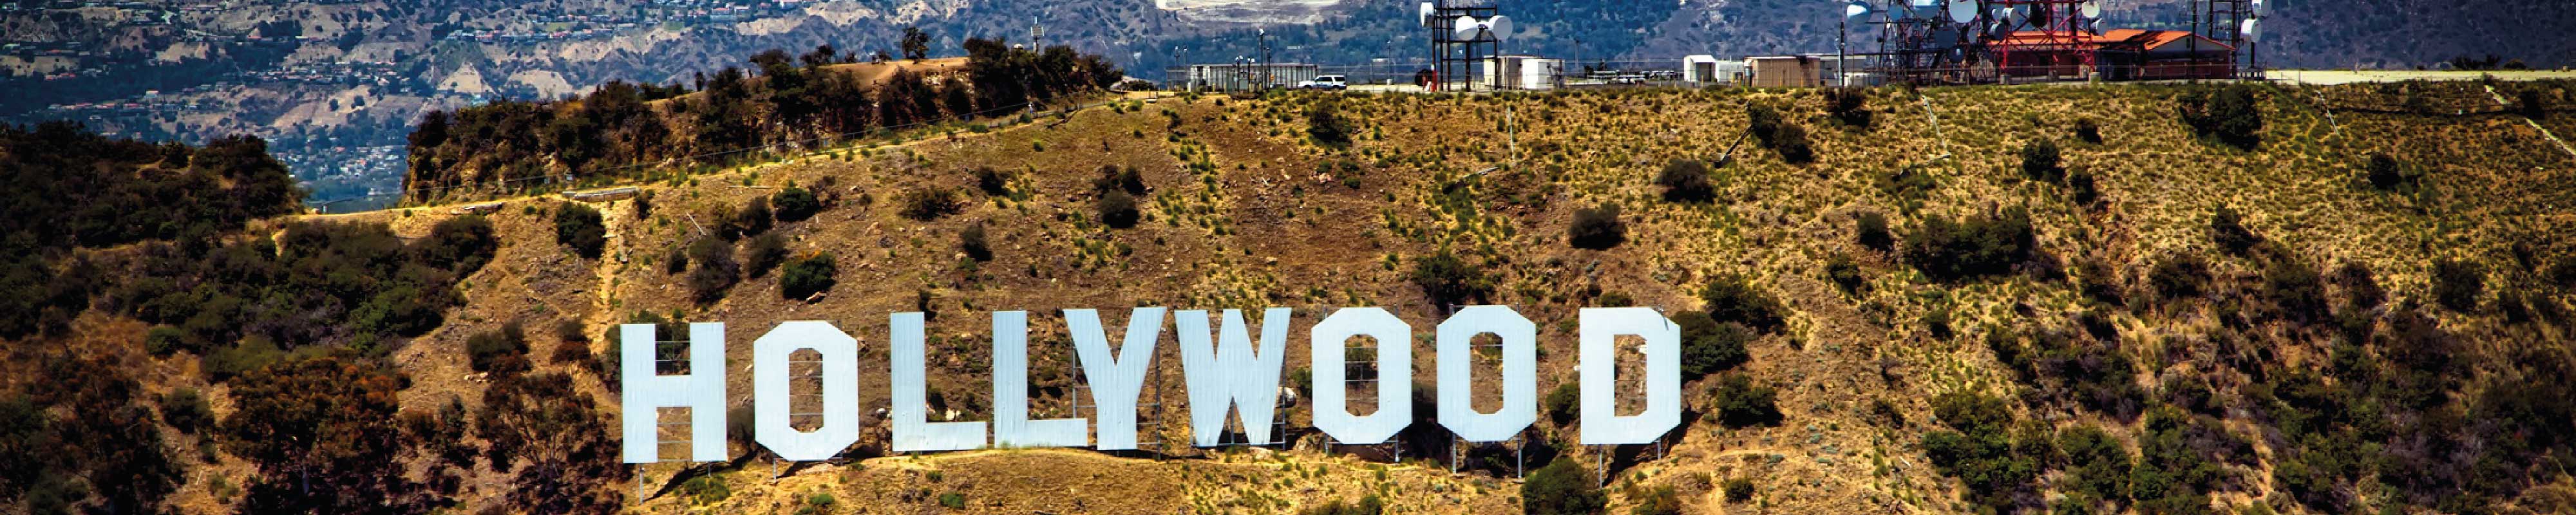 Consigna Equipaje | Hollywood en Los Angeles - Nannybag